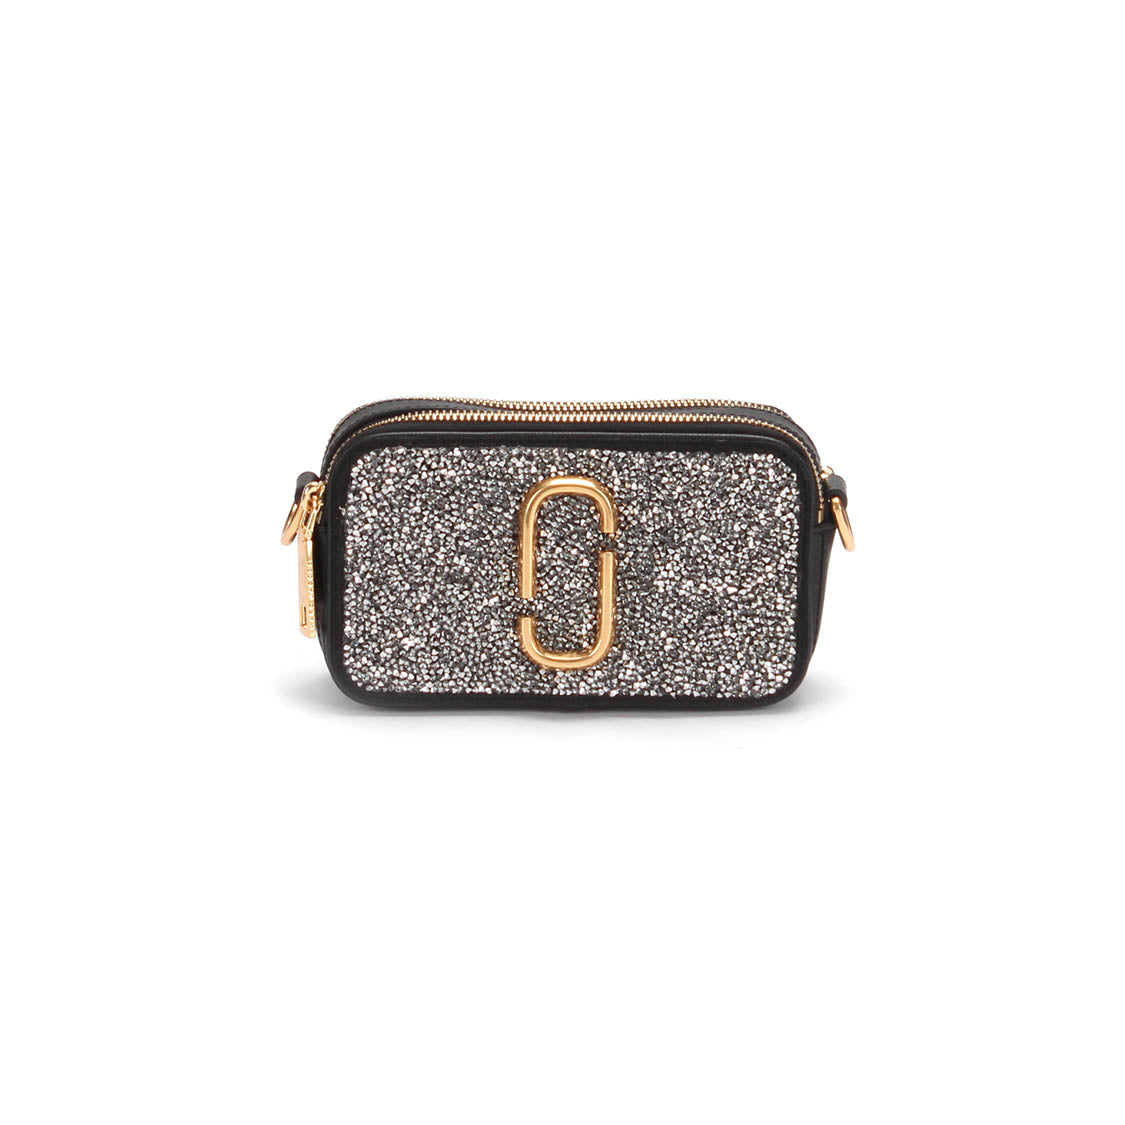 Crystal Embellished Snapshot Camera Bag